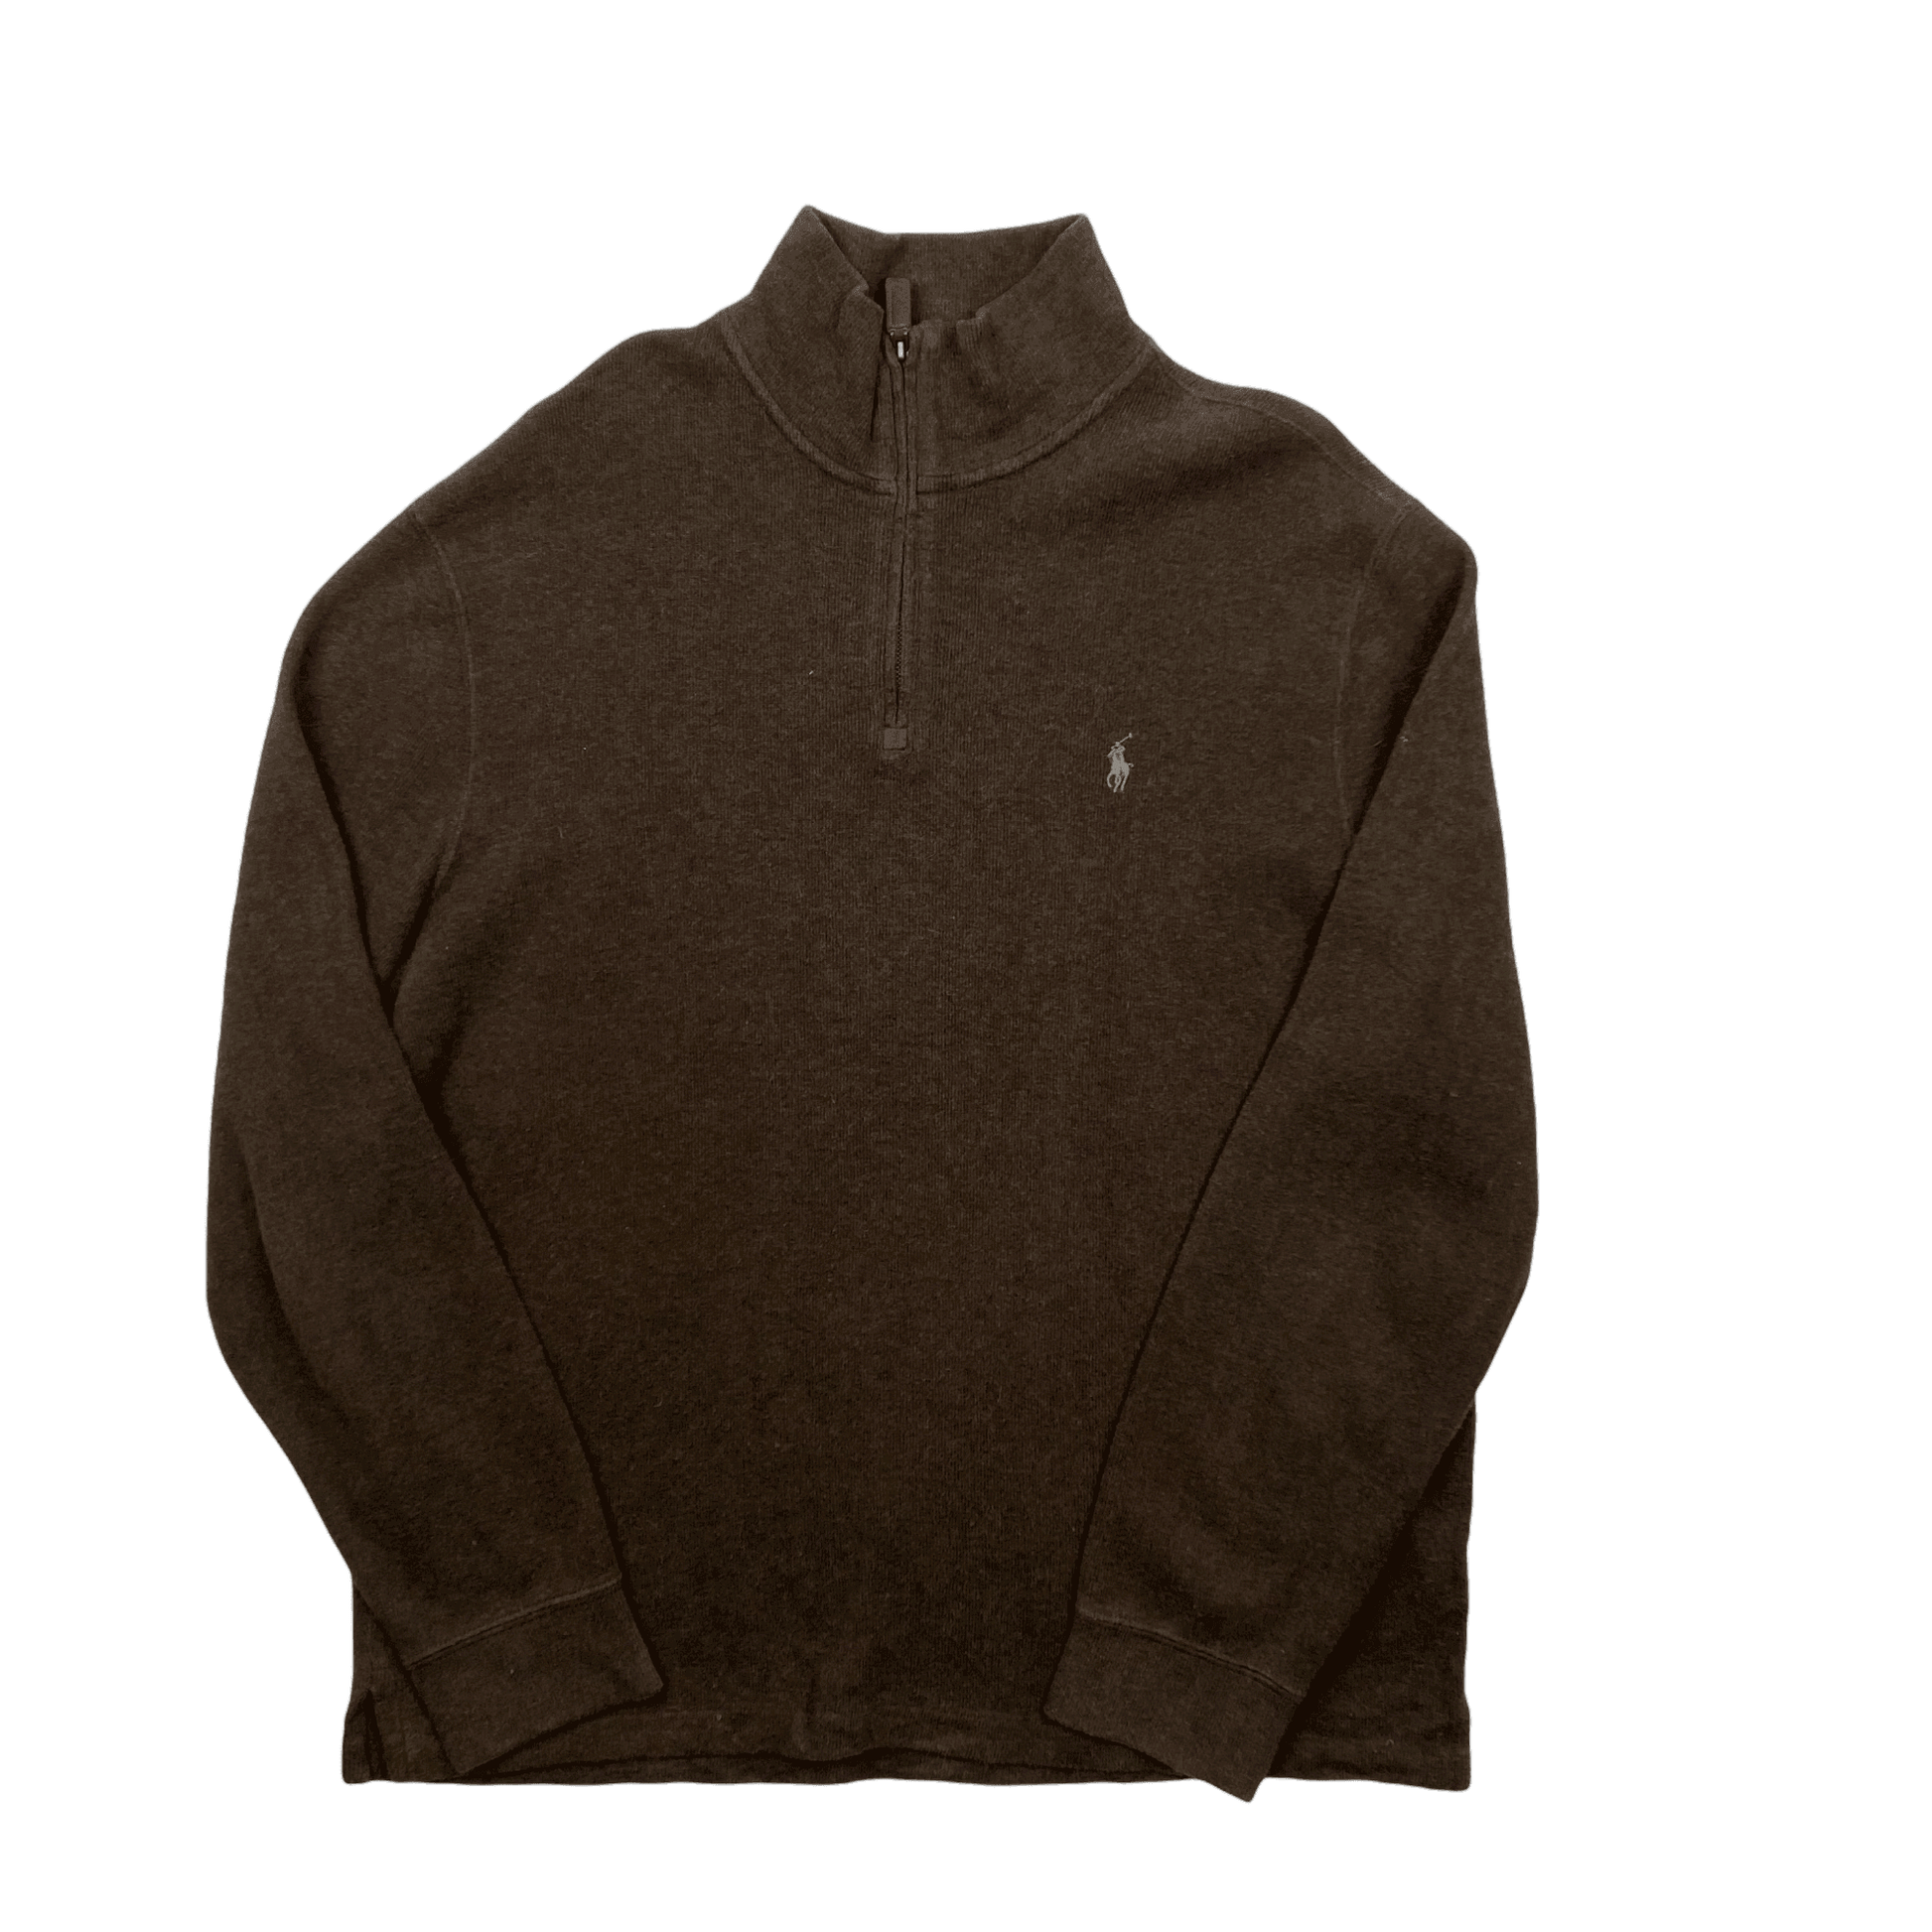 Vintage 90s Brown Polo Ralph Lauren Quarter Zip Sweatshirt - Large - The Streetwear Studio